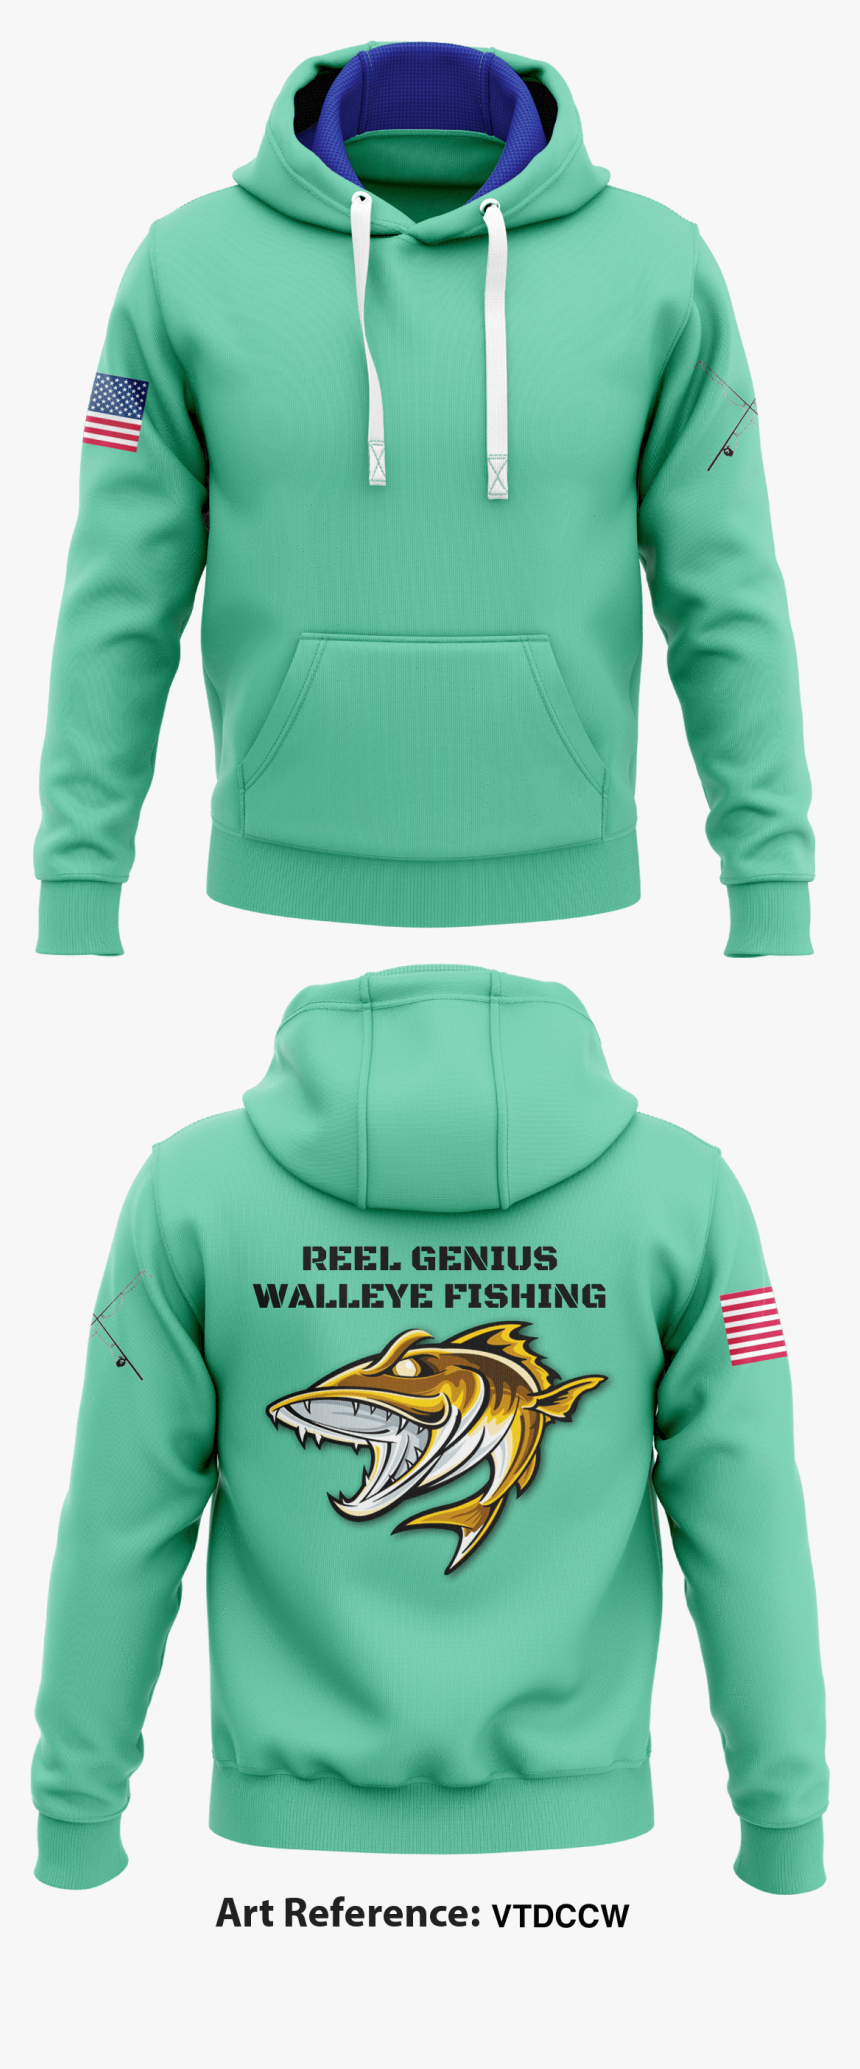 Reel Genius Walleye Fishing Hoodie - Cool Rams Hoodies, HD Png Download, Free Download